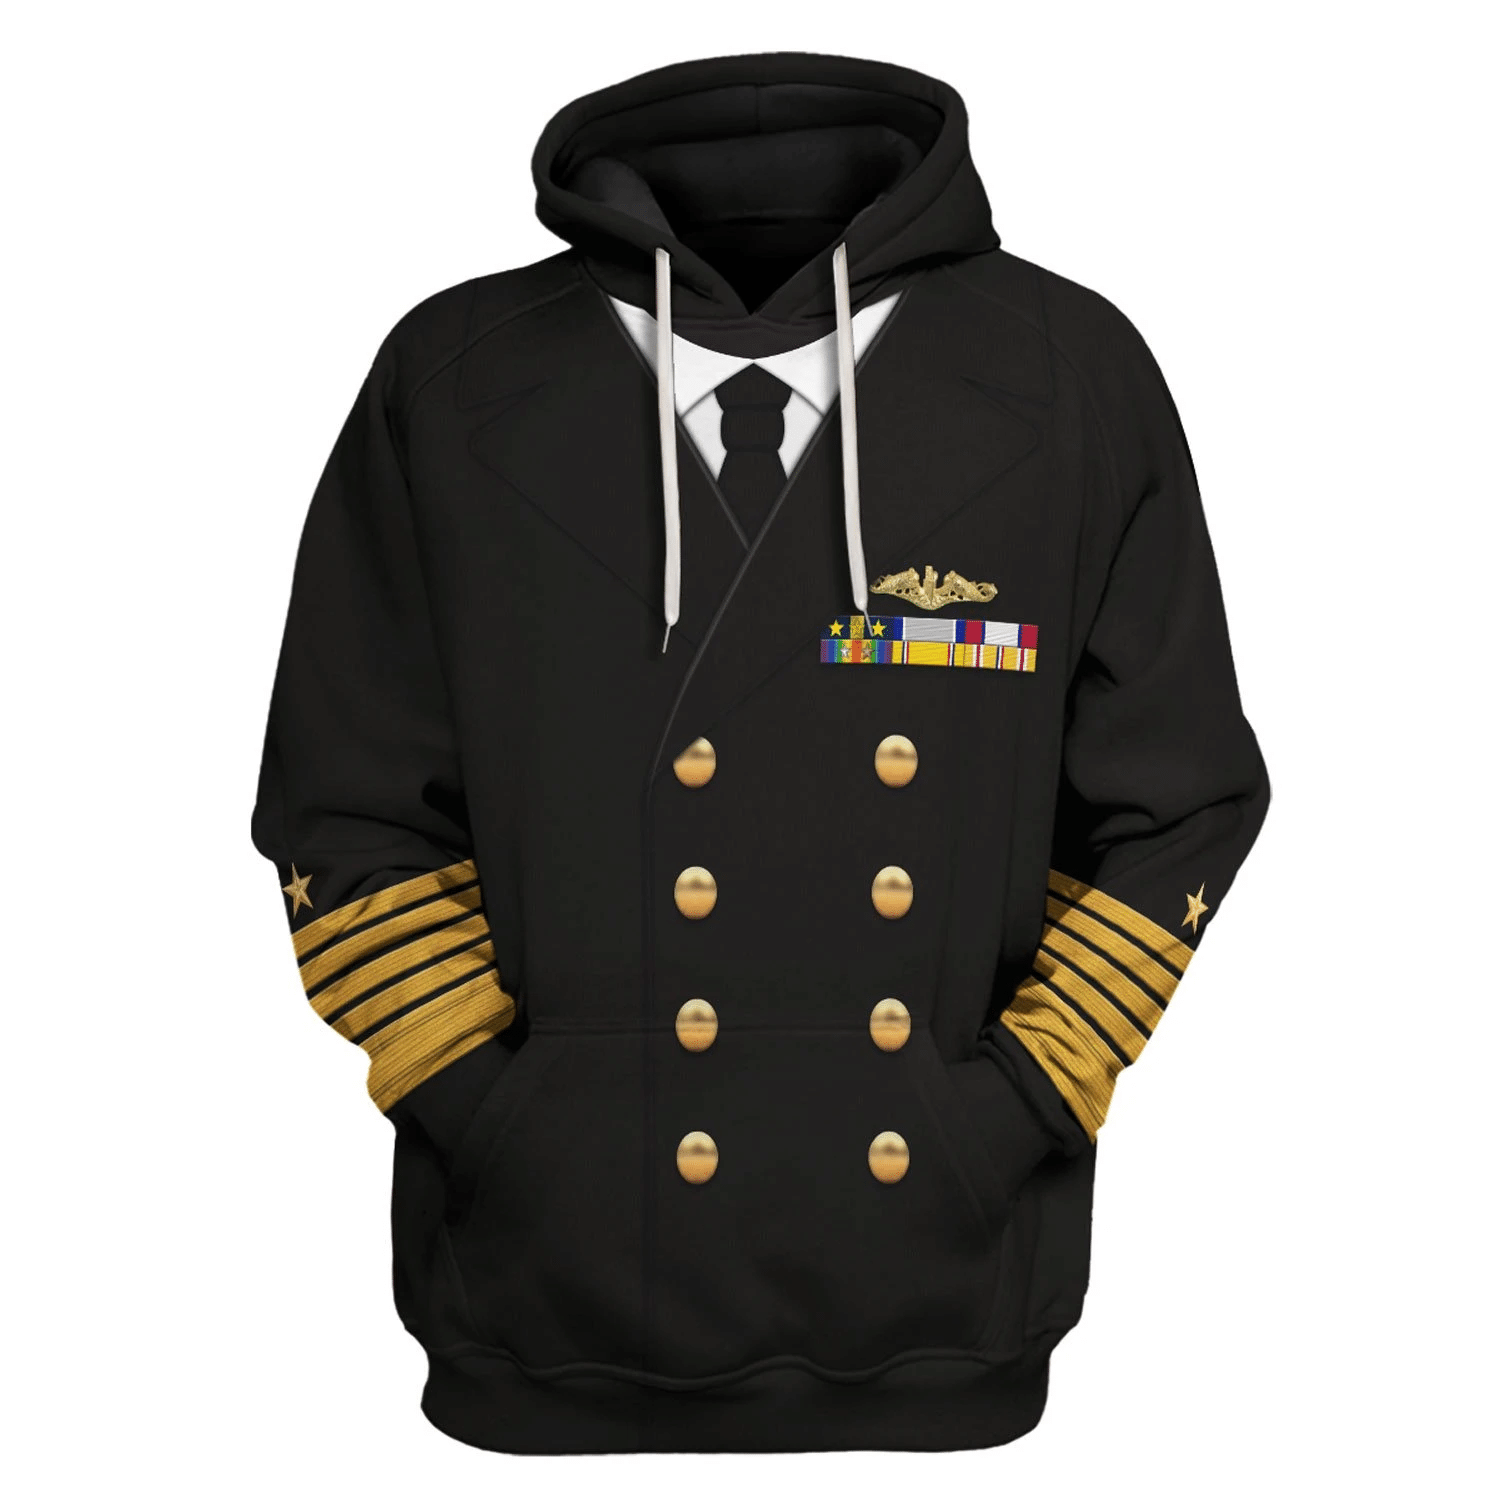 Gearhomie US Navy Fleet Admiral Chester W. Nimitz Costume hoodie